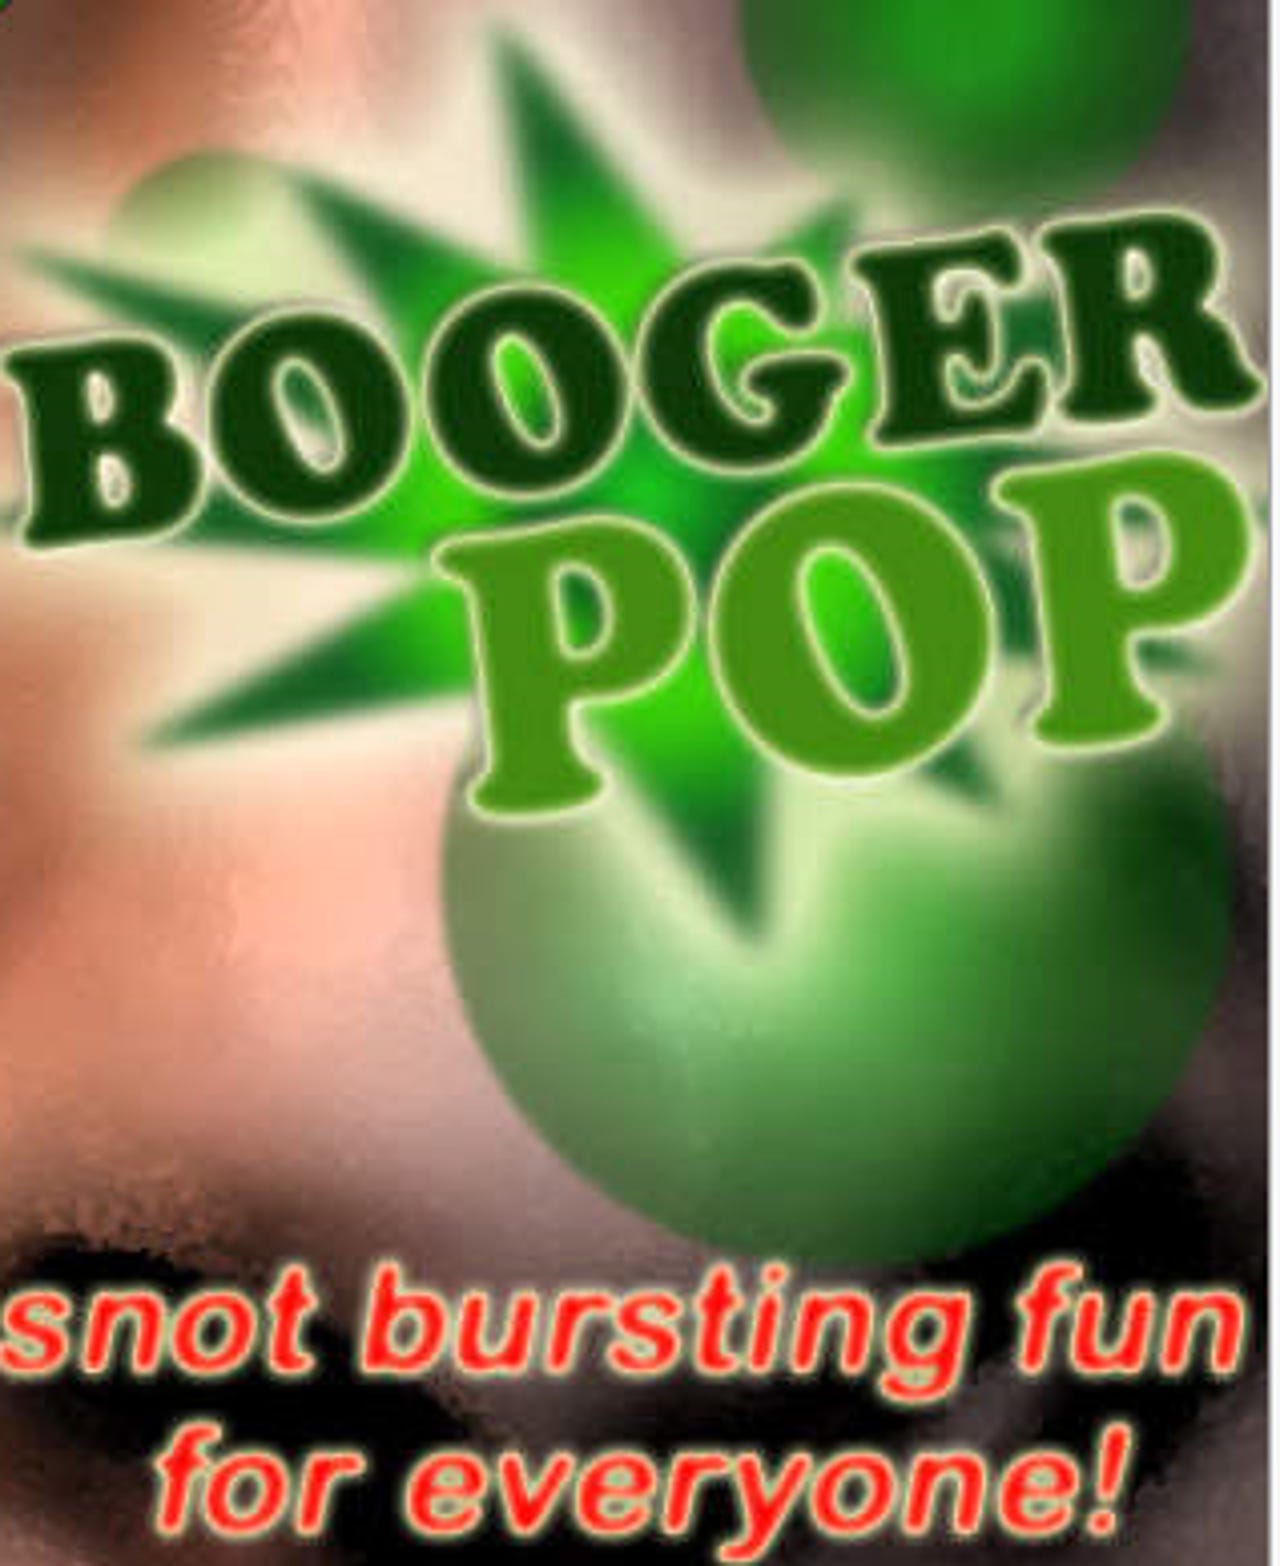 d-booger-pop.png